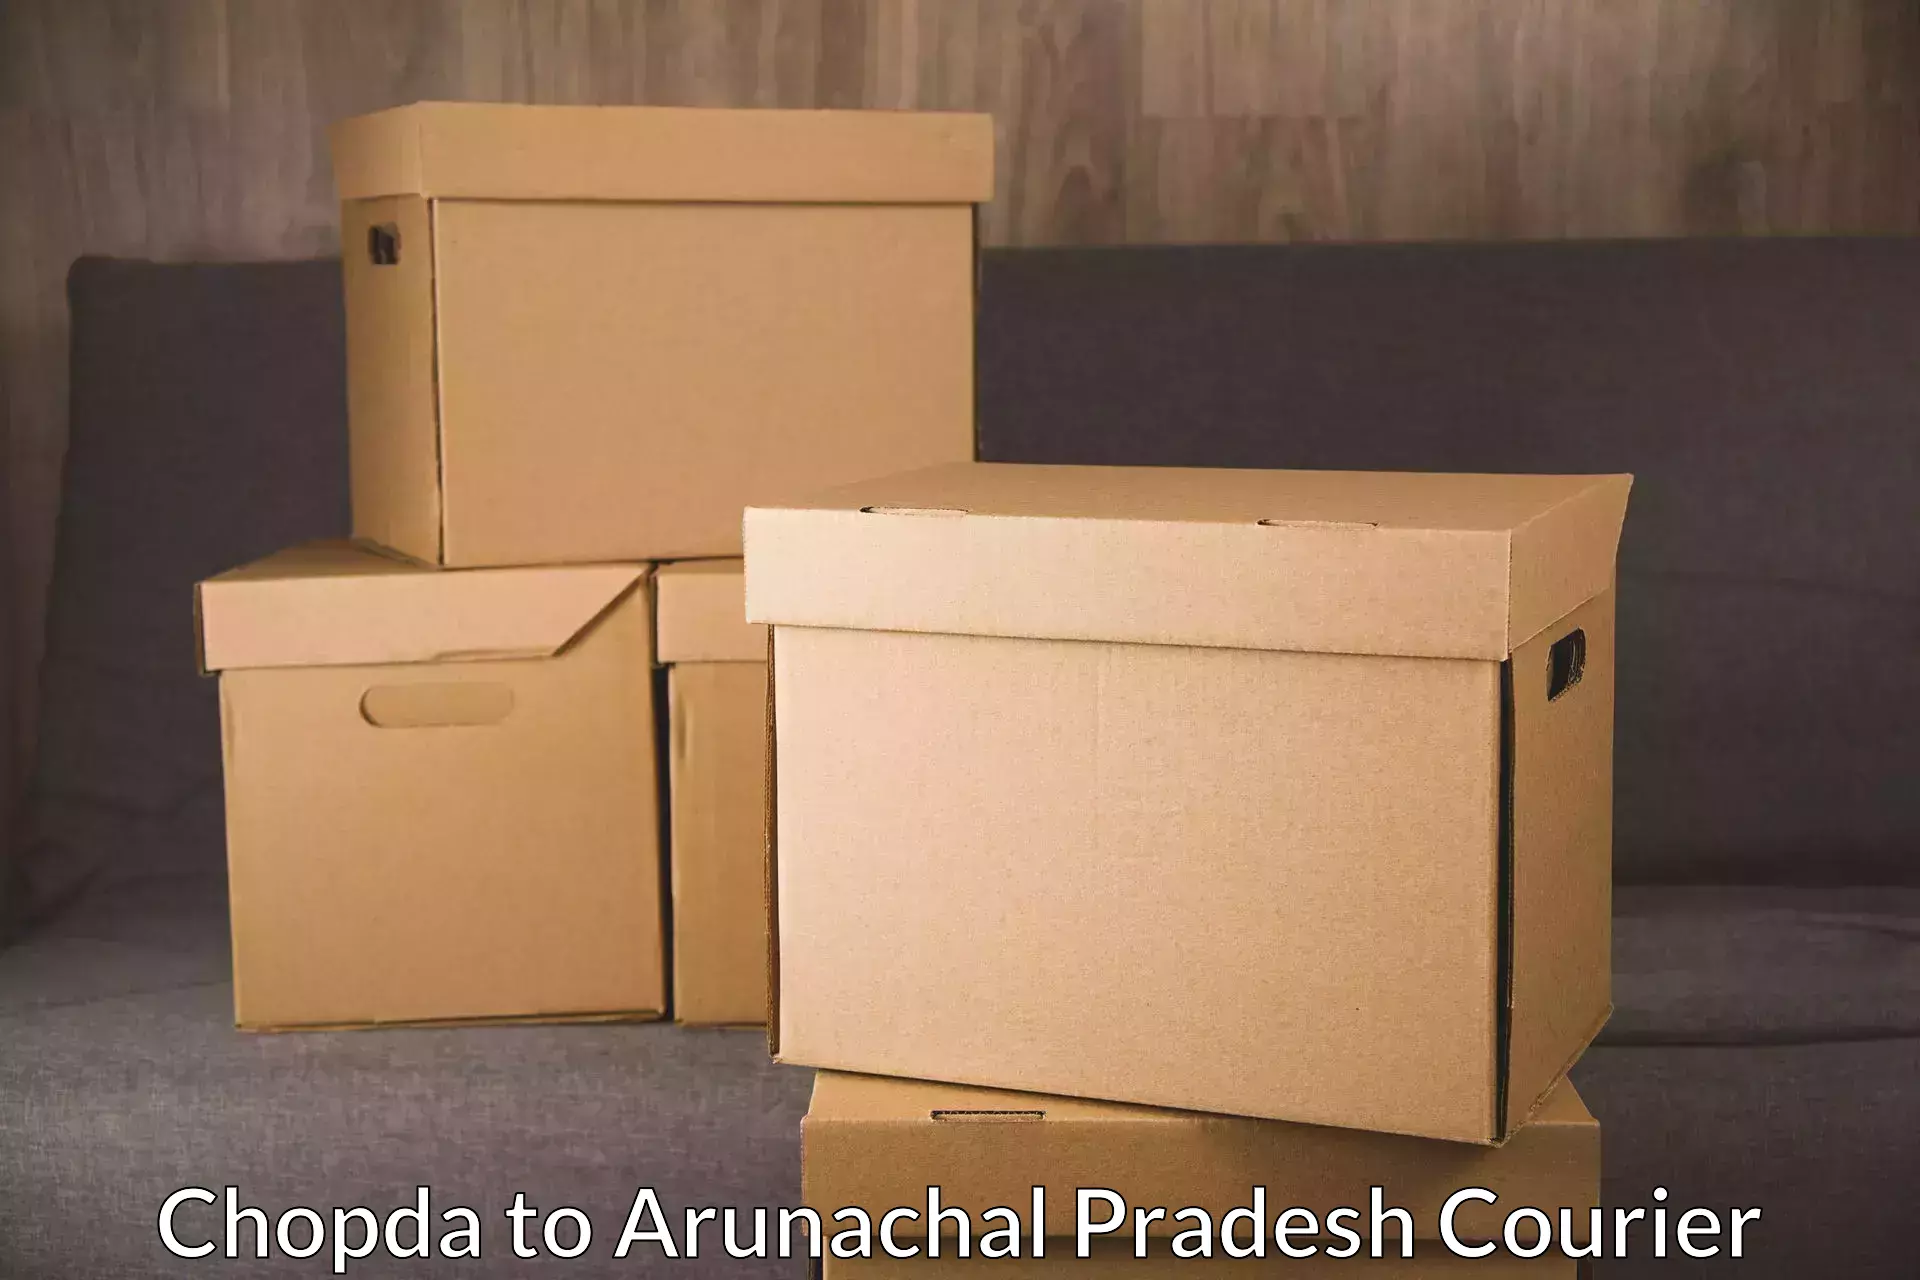 Quick parcel dispatch in Chopda to Arunachal Pradesh